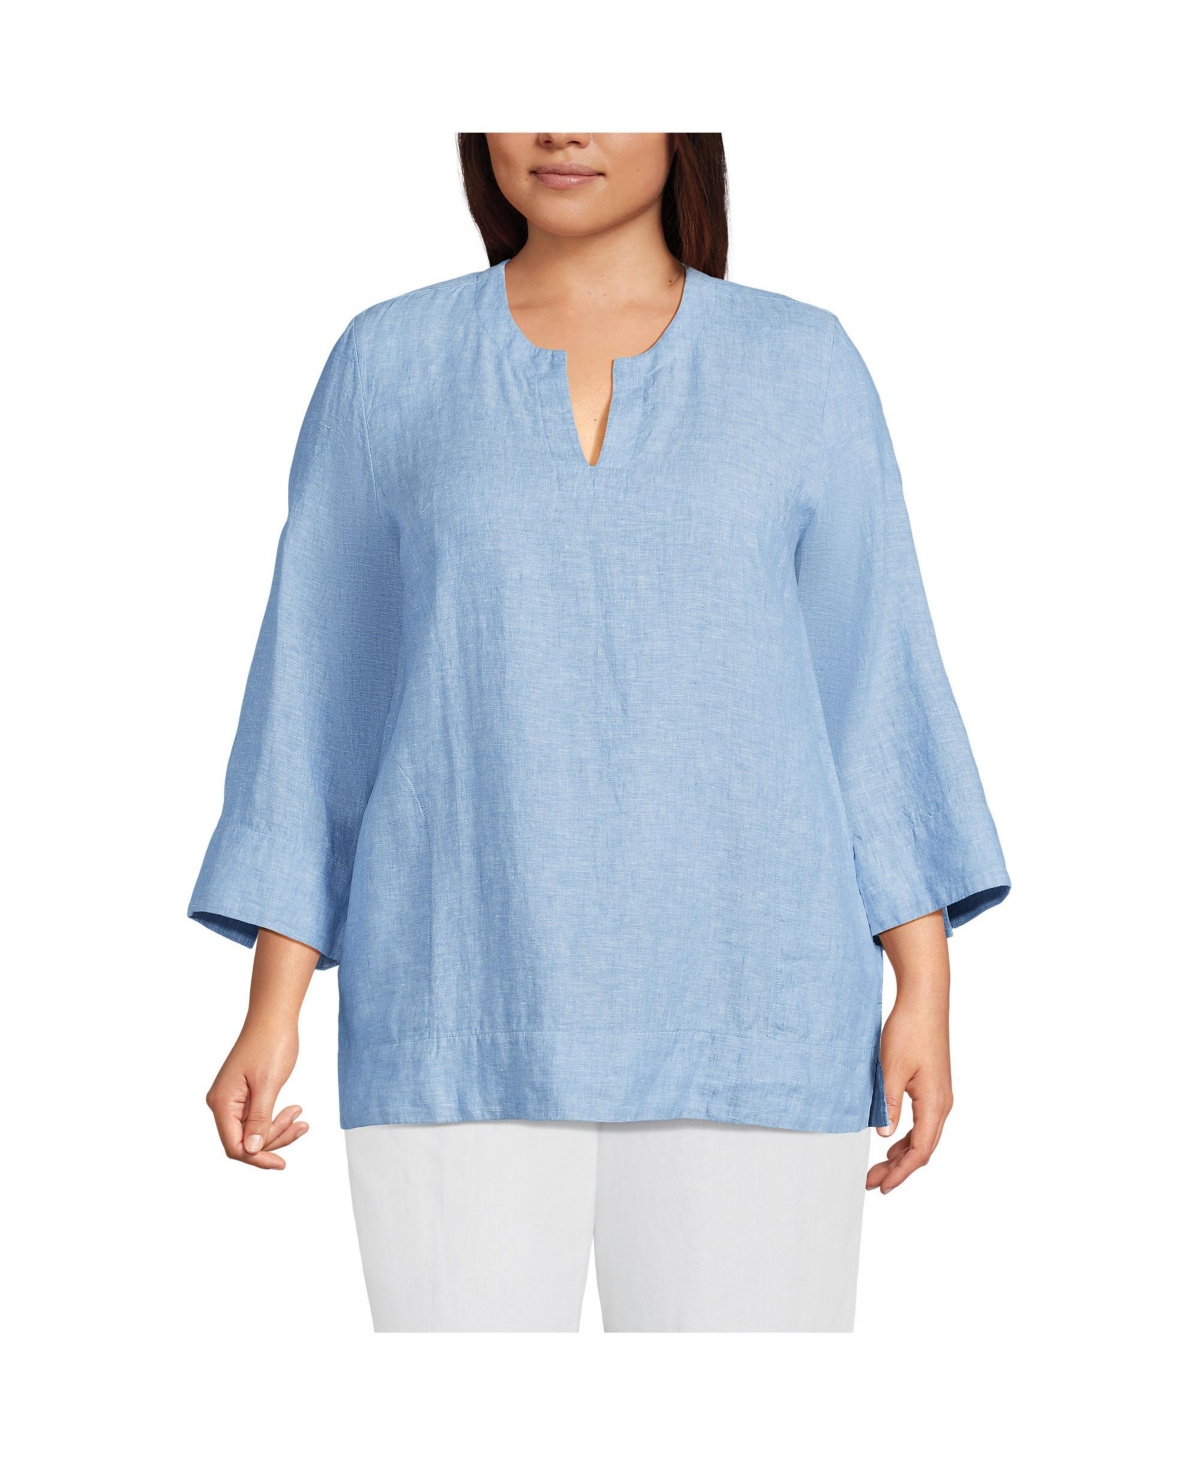 Plus Size Linen Split Neck Tunic Top - Soft blue linen